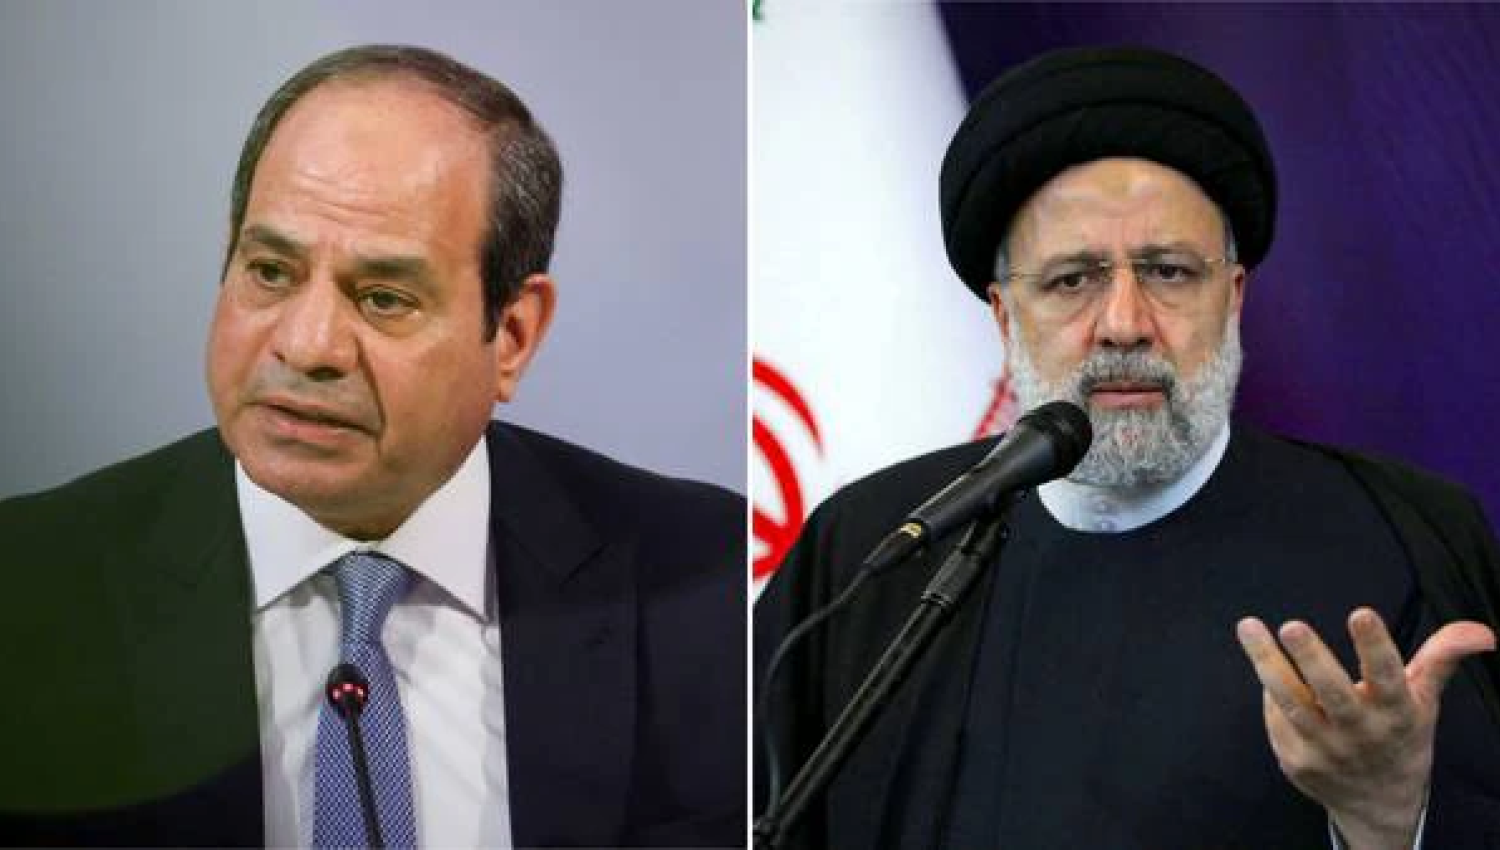 تطبيع العلاقات بين مصر وإيران برعاية عراقية